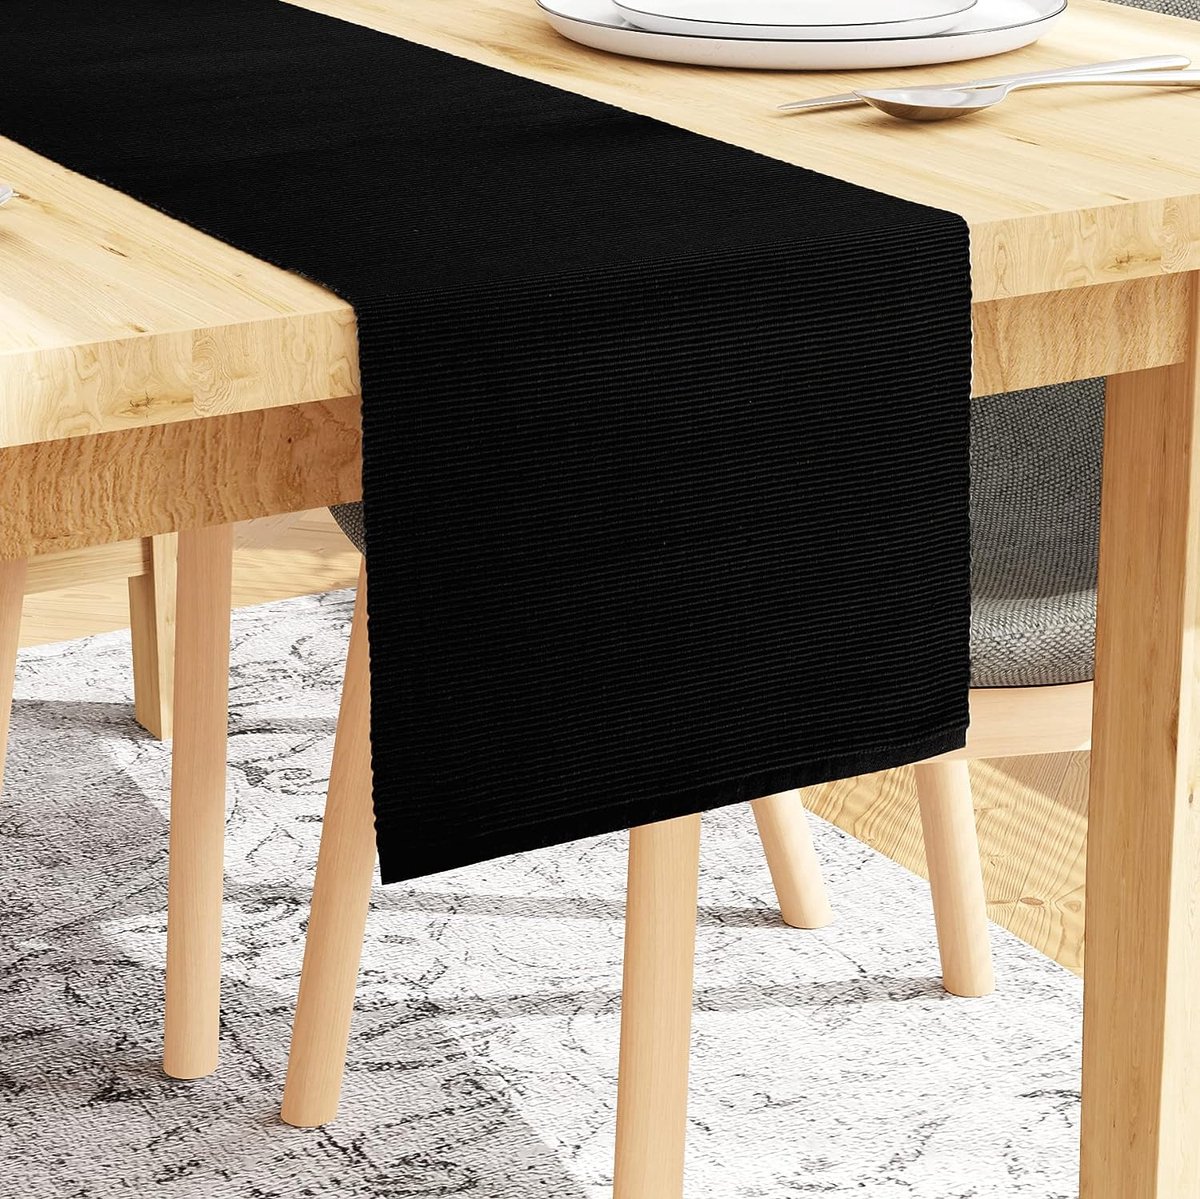 Paneeltafel voor 6 genoemde tafels - Solid Black, met afmeting 33 x 150 cm. Voor thuis, cafes, restaurants en hotels